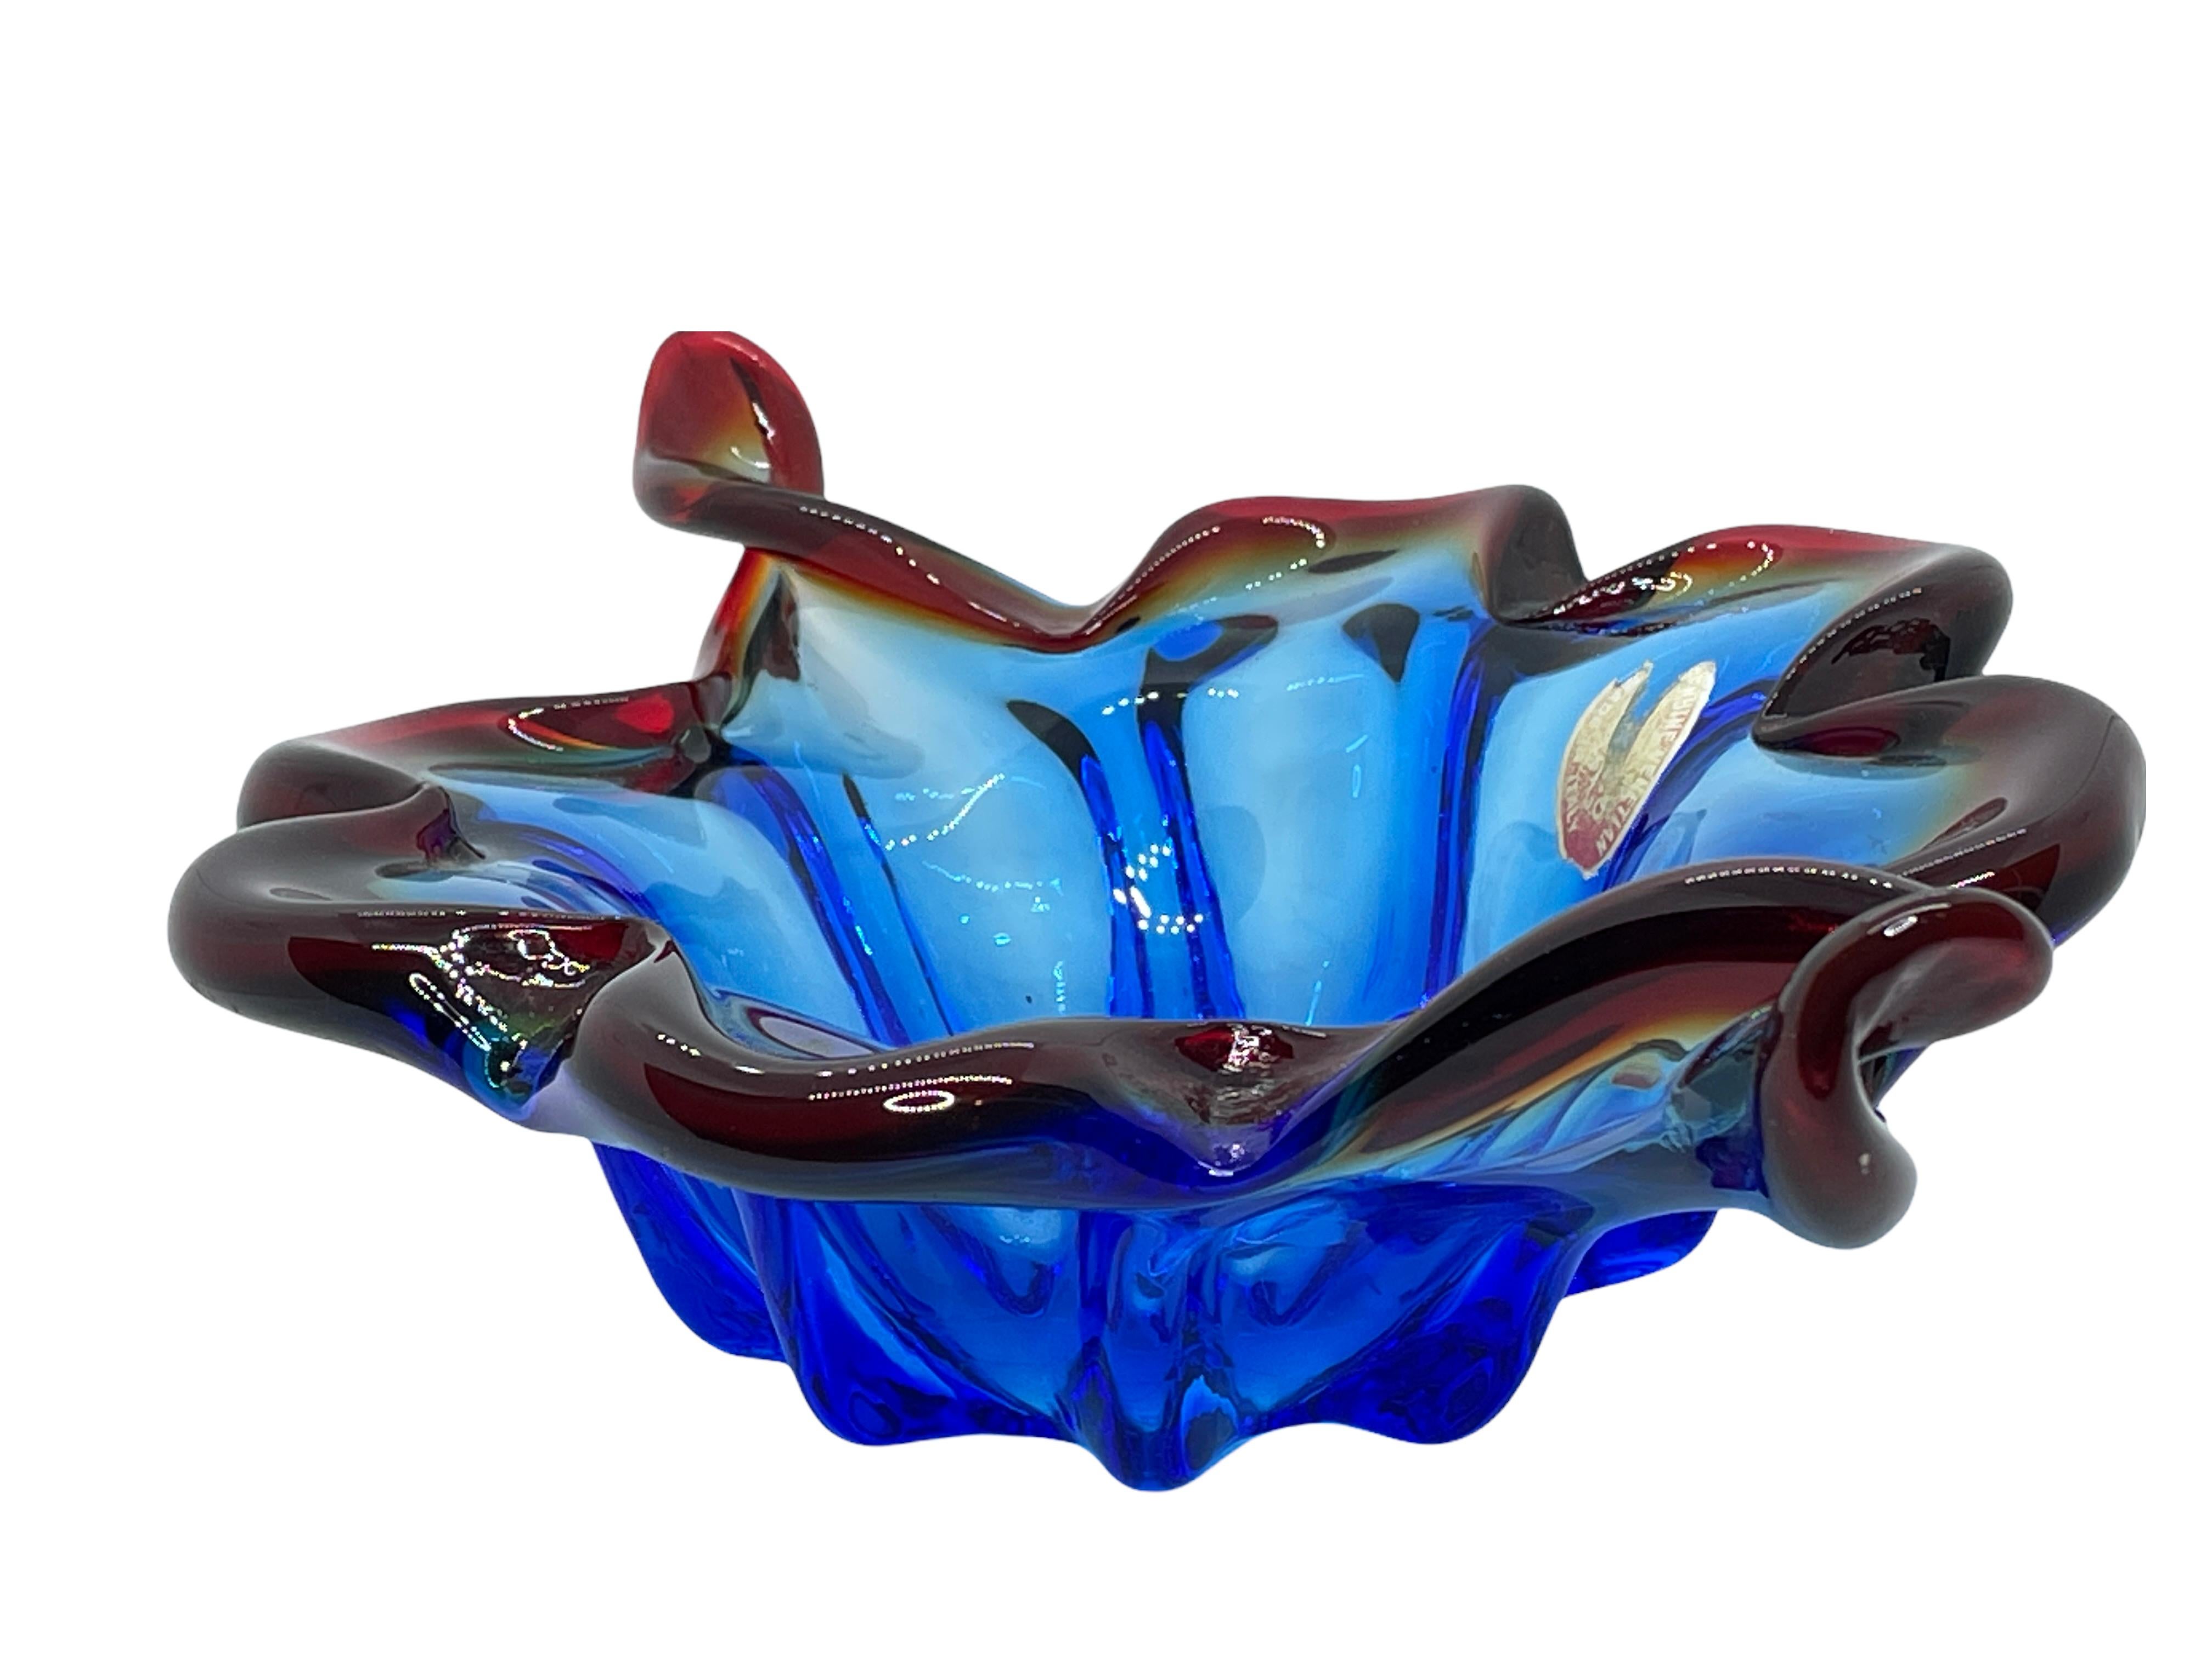 Wunderschönes mundgeblasenes Murano-Kunstglas mit Sommerso und Bullicante-Techniken. Eine schöne organisch geformte Schale, Auffangschale oder Tafelaufsatz, Venedig, Murano, Italien, 1960er Jahre.